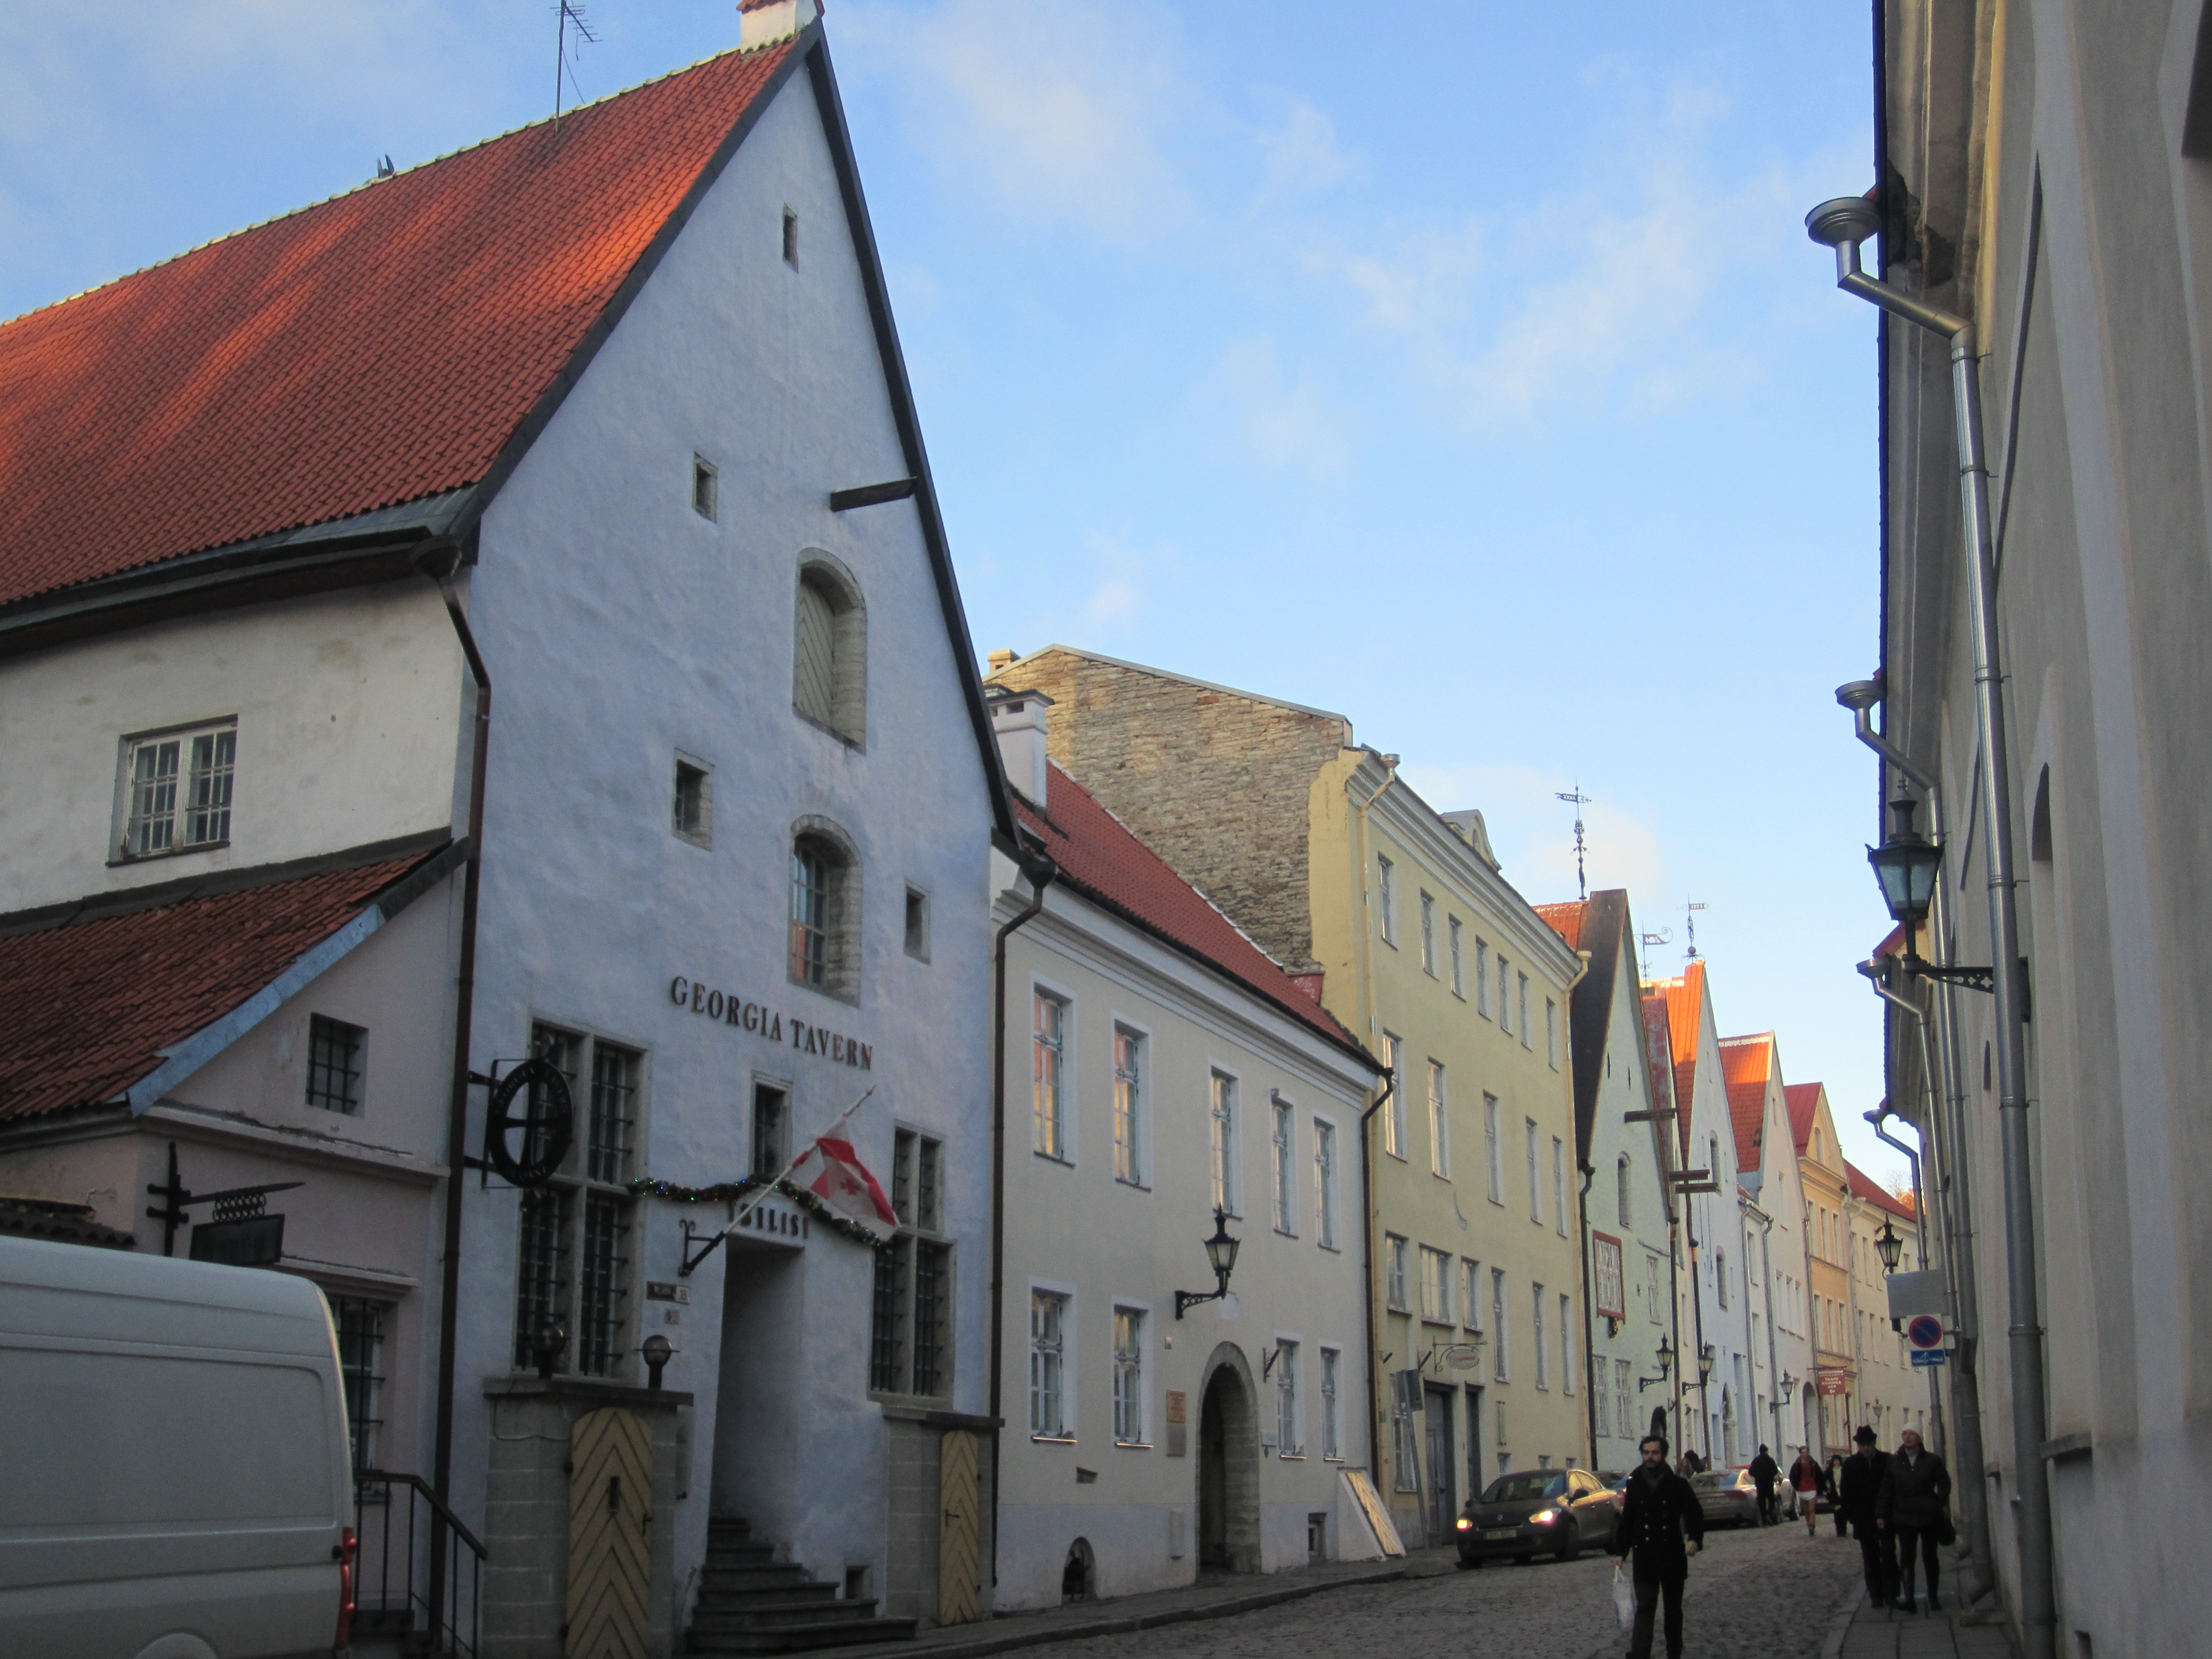 Пешеходная экскурсия по Старому городу Таллина. Лабиринты узких улочек, церкви, средневековые дома. Бронирование